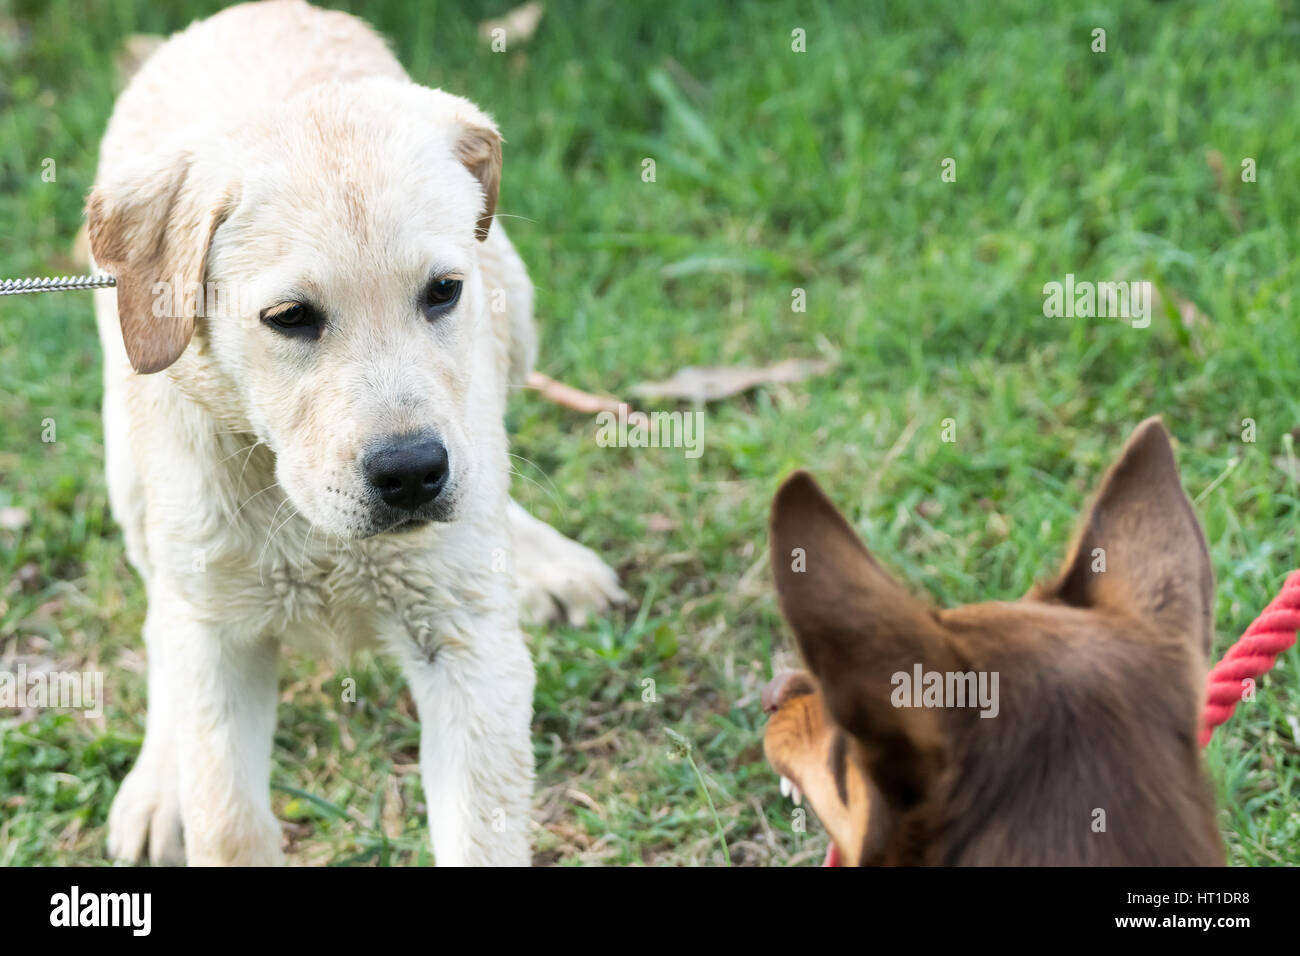 Ein Kelpie Hund knurrt und fletscht seine Zähne an einen Labrador Retriever  Welpen, der Angst sieht Stockfotografie - Alamy